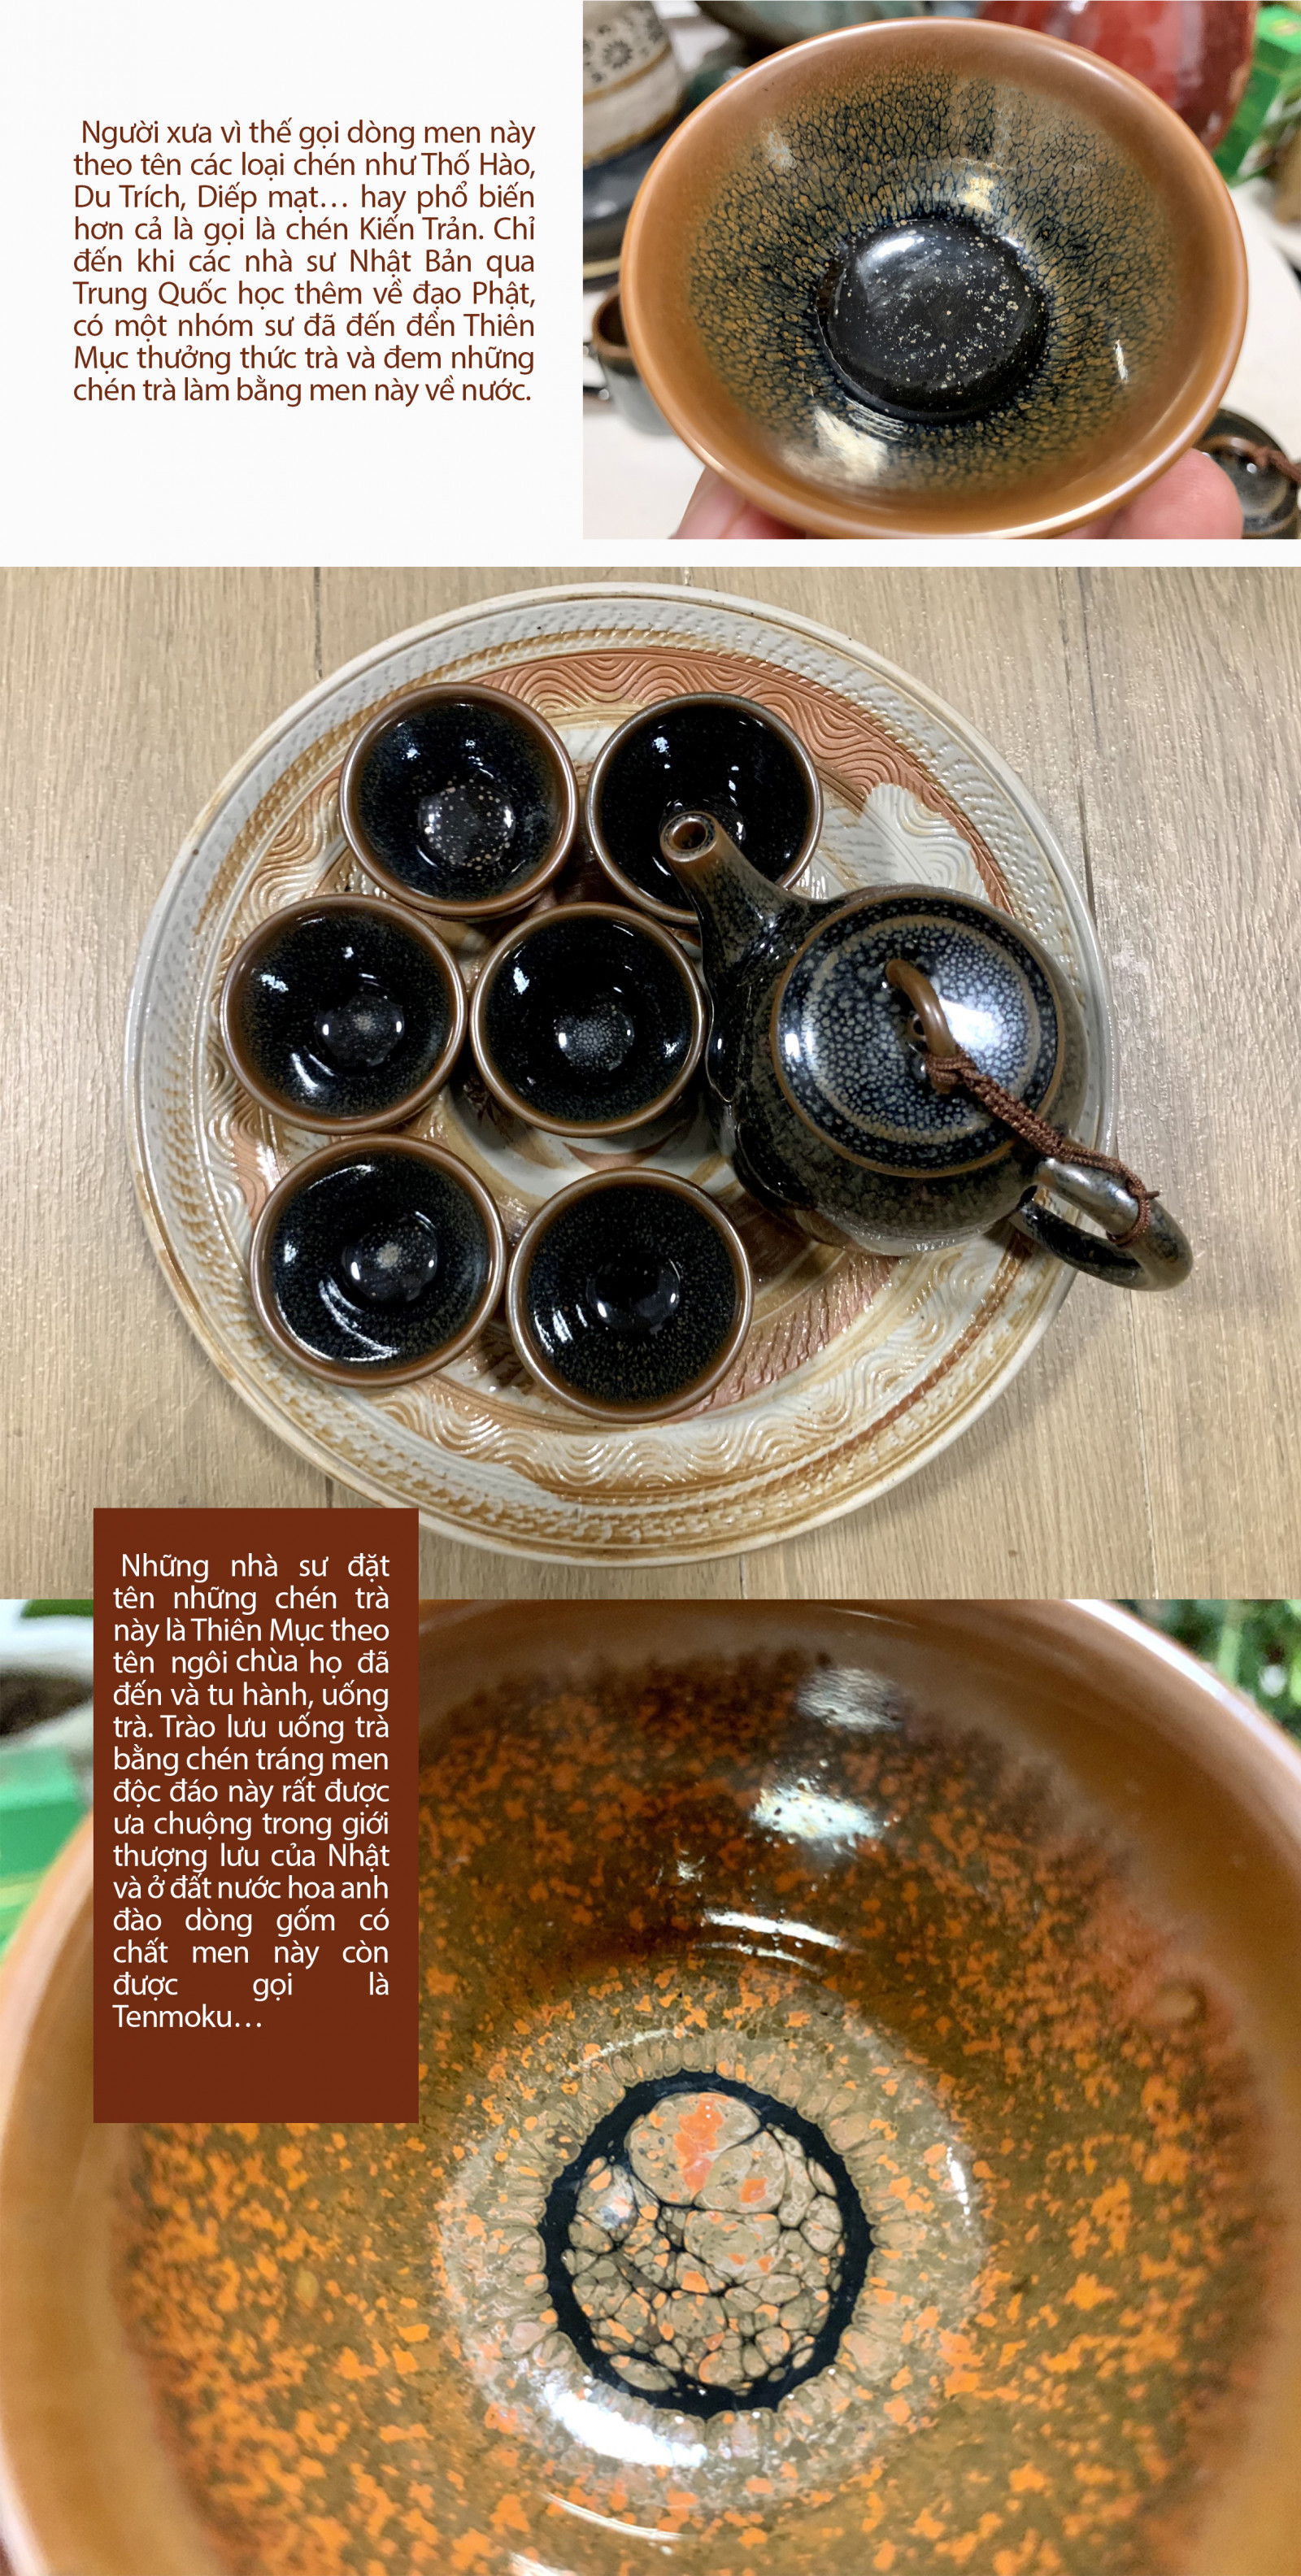 Chiêm ngưỡng bộ ấm trà men Thiên Mục ở làng gốm Bát Tràng - Ảnh 3